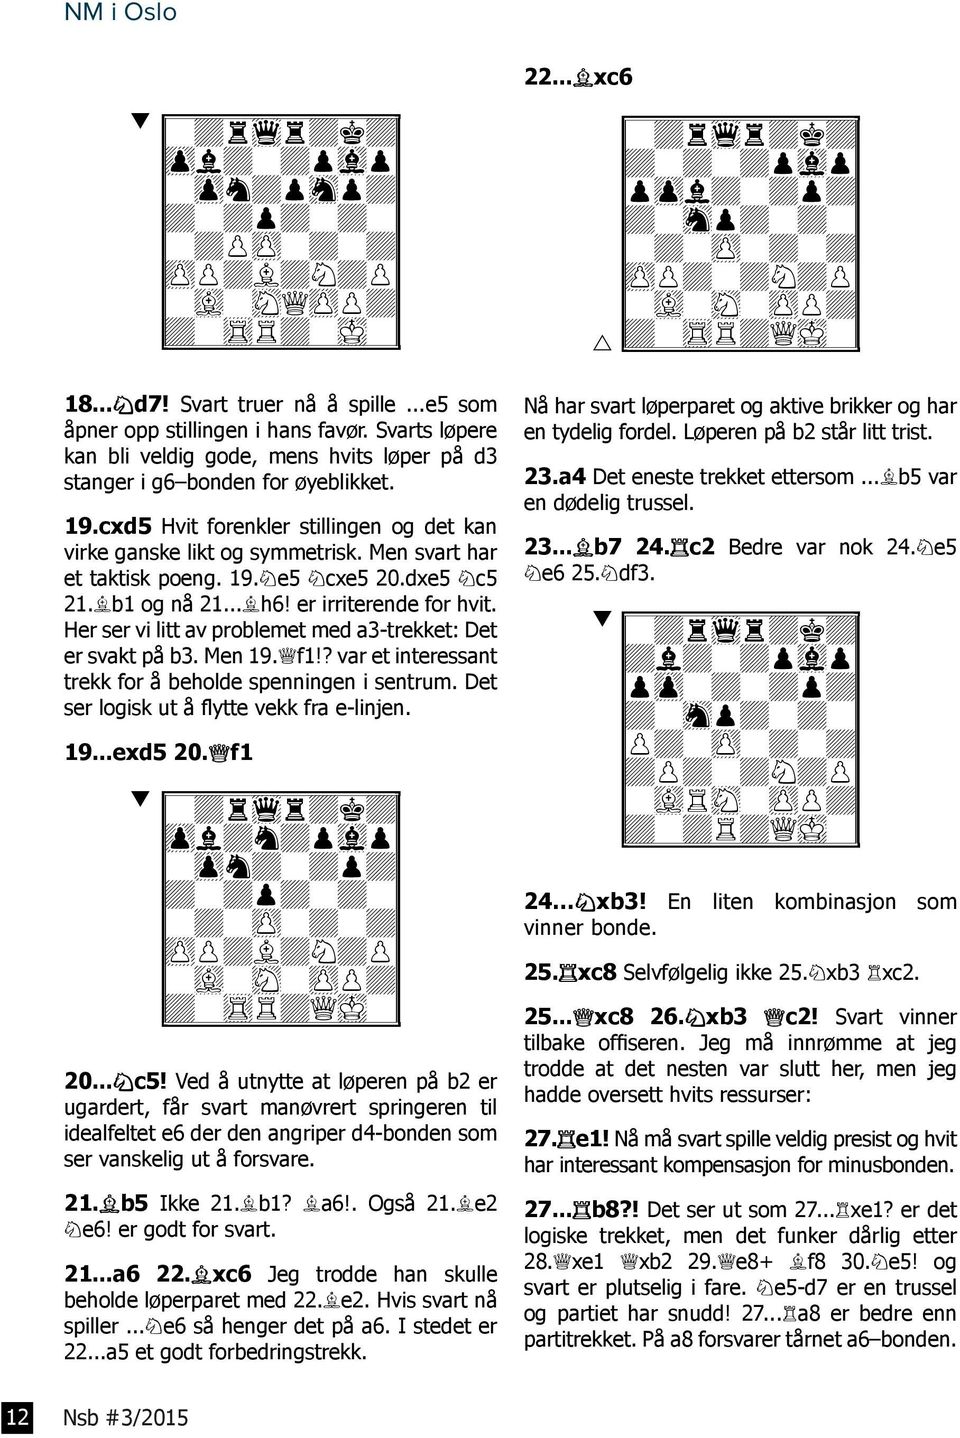 Men svart har et taktisk poeng. 19.Se5 Scxe5 20.dxe5 Sc5 21.Lb1 og nå 21...Lh6! er irriterende for hvit. Her ser vi litt av problemet med a3-trekket: Det er svakt på b3. Men 19.Df1!